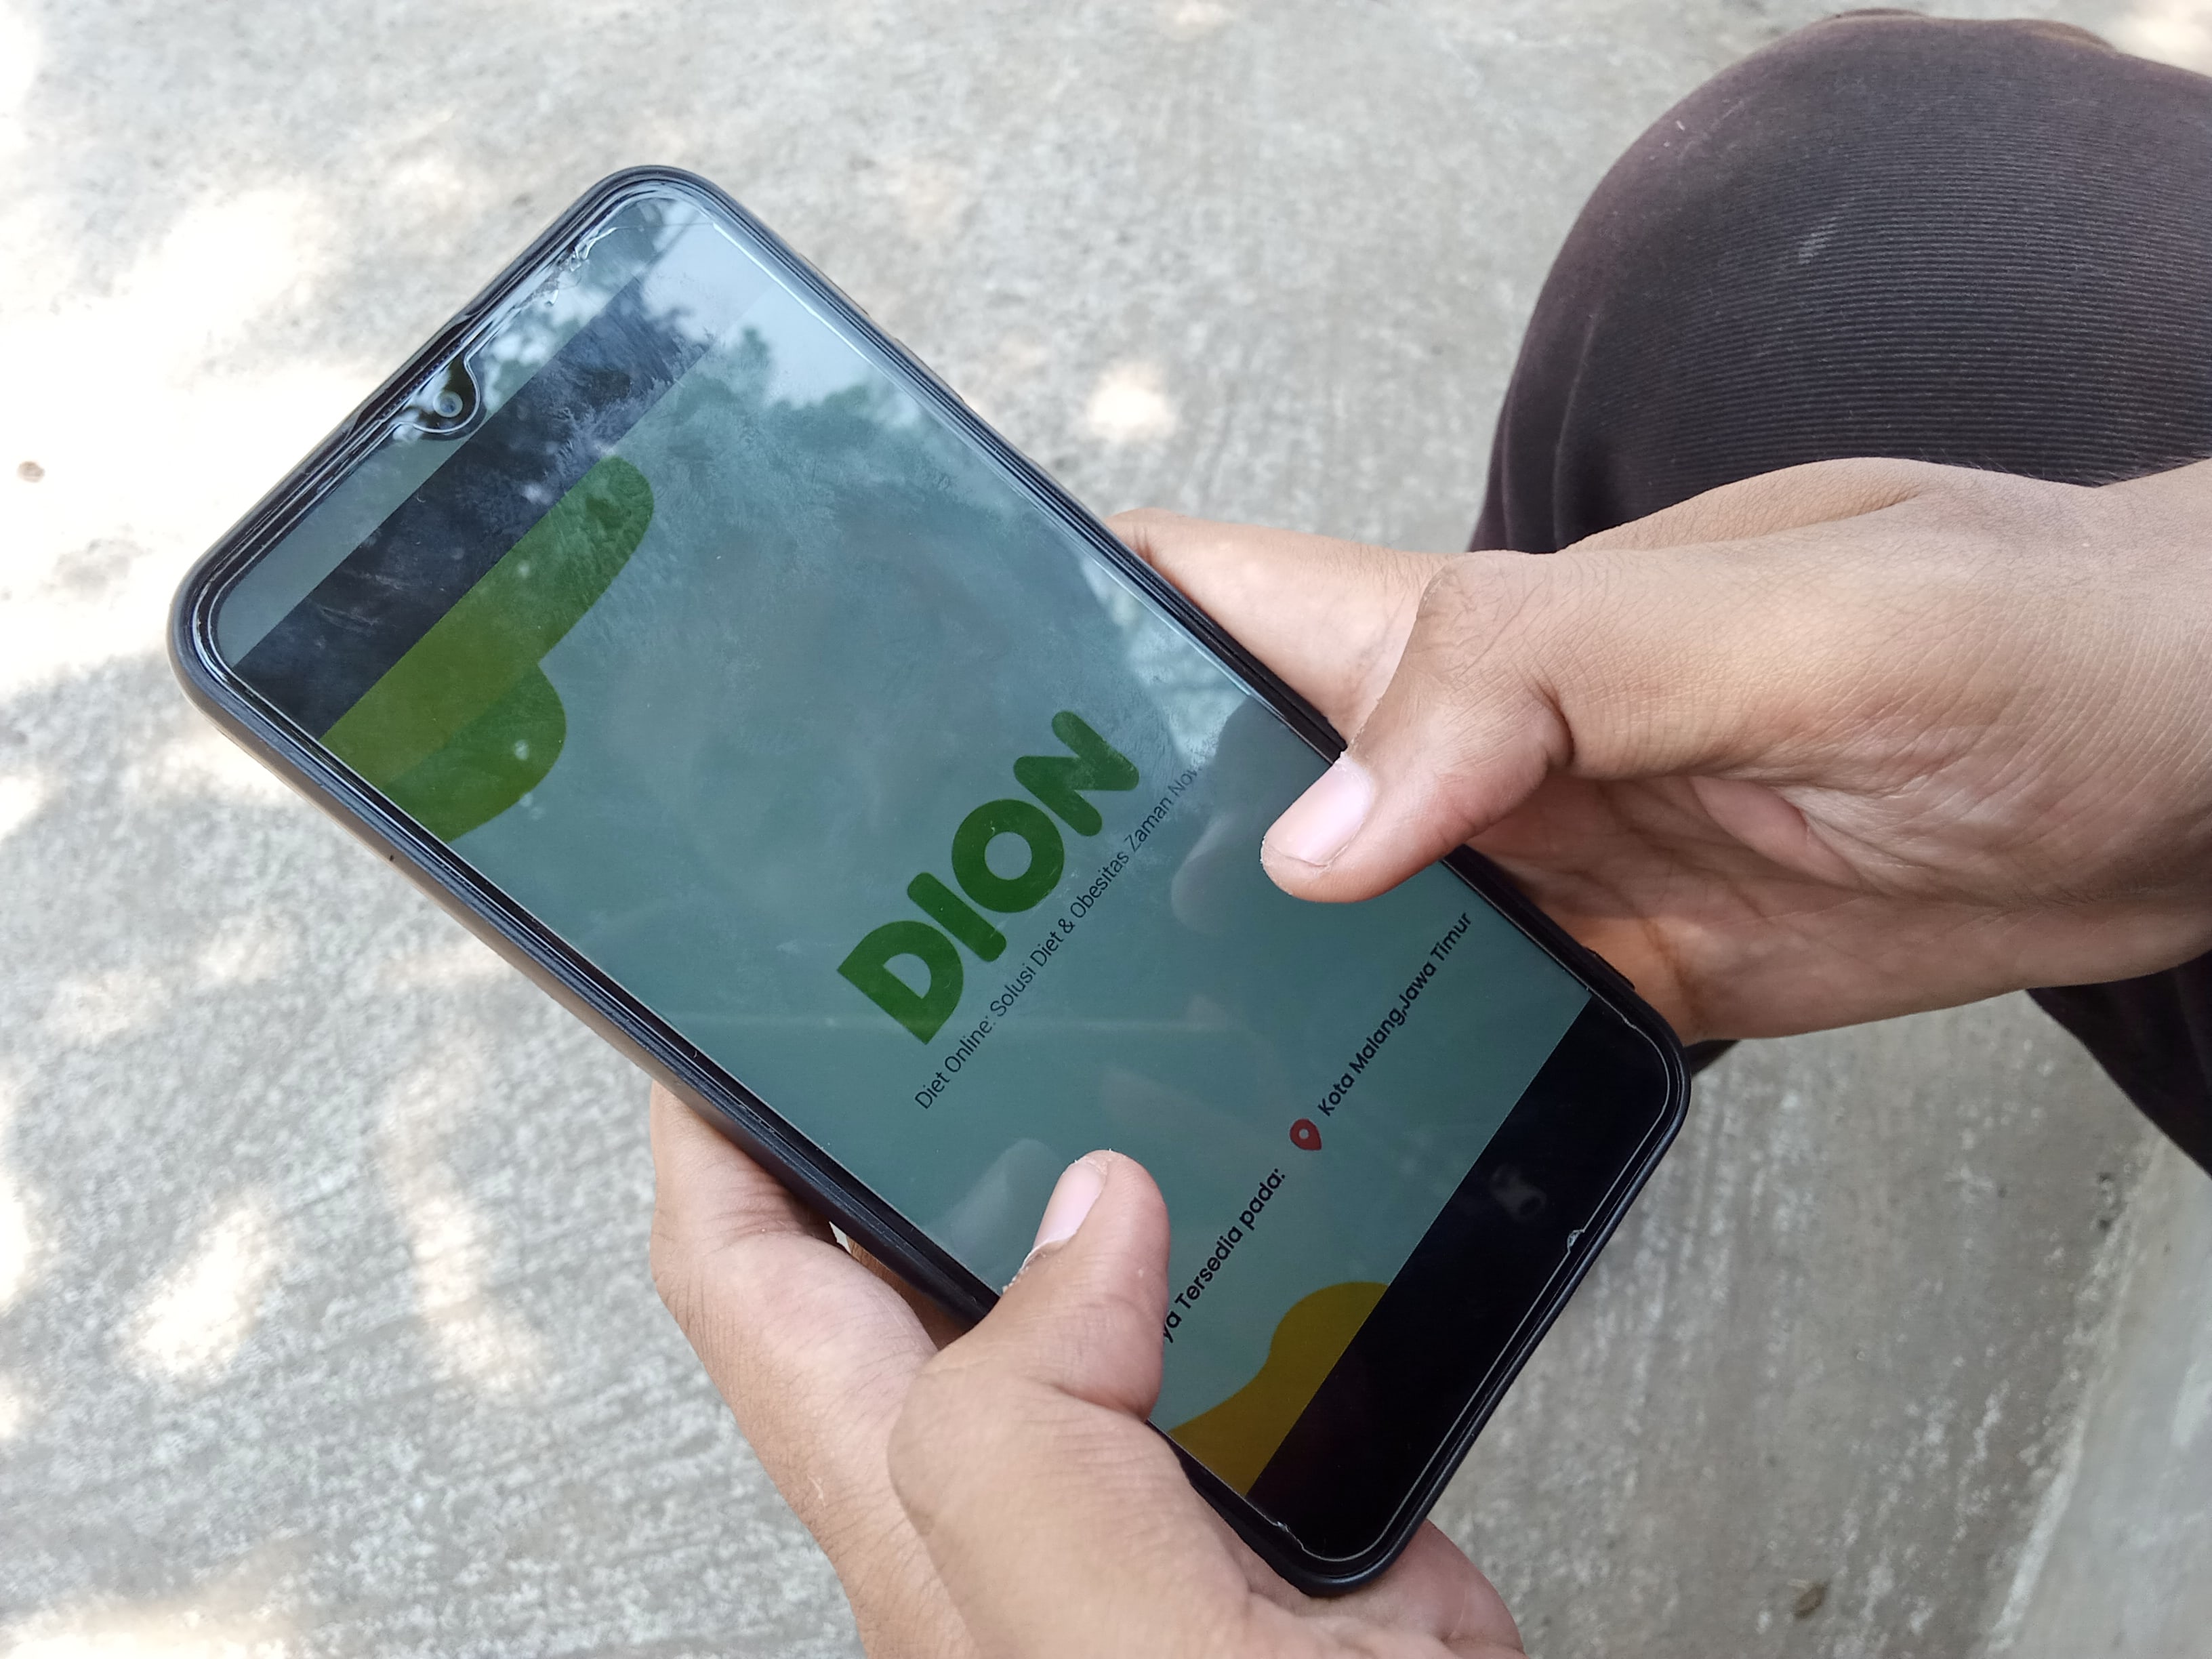 Tampilan aplikasi Diet Online (Dion) di telepon genggam. (Foto: Theo/ngopibareng.id)